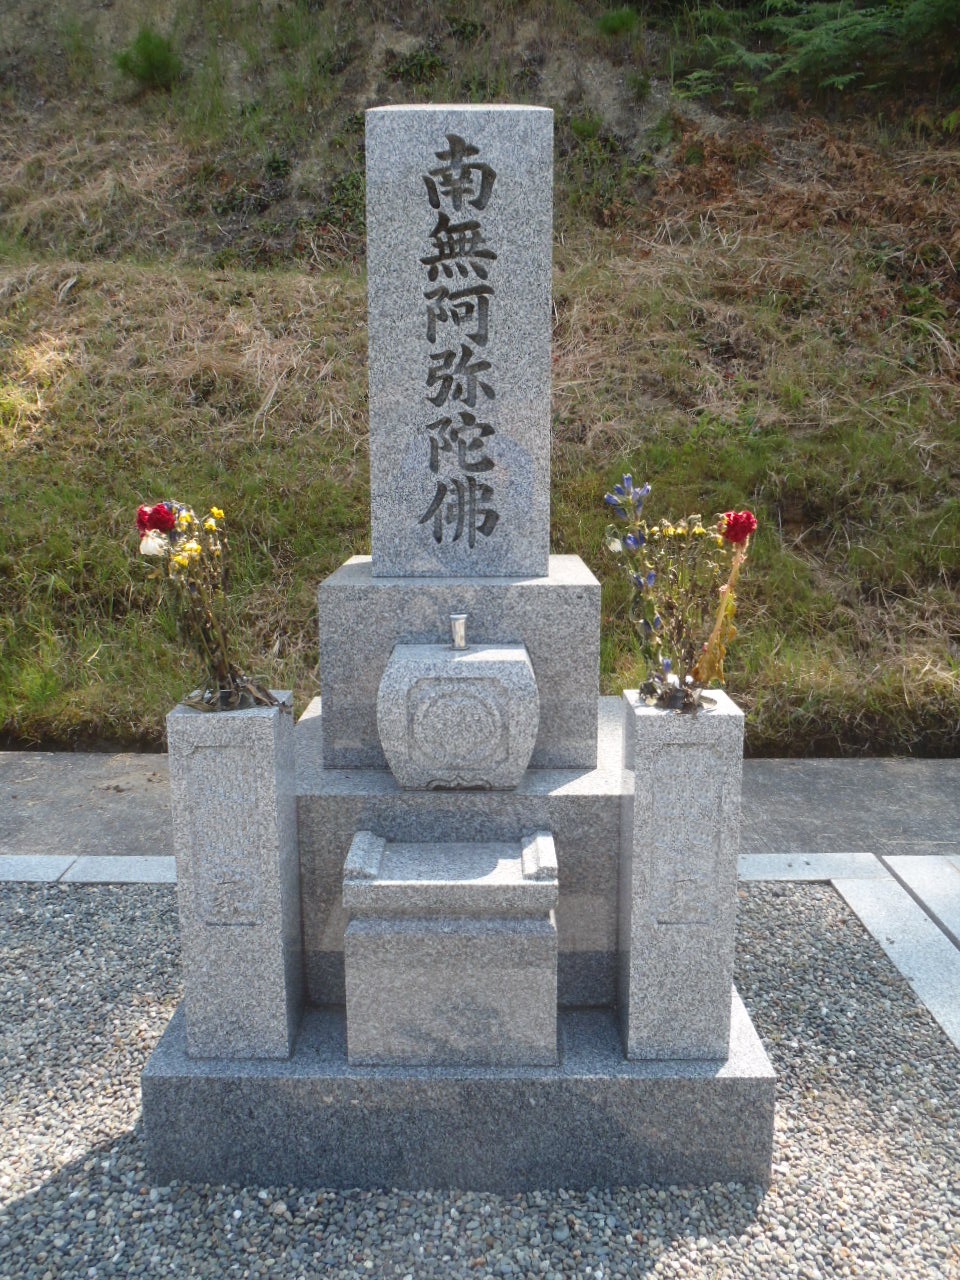 伝統的な和墓にも洗練されたデザインのお墓があります 宝珠塔 ストーンメーソン真 滋賀県東近江市の石材店